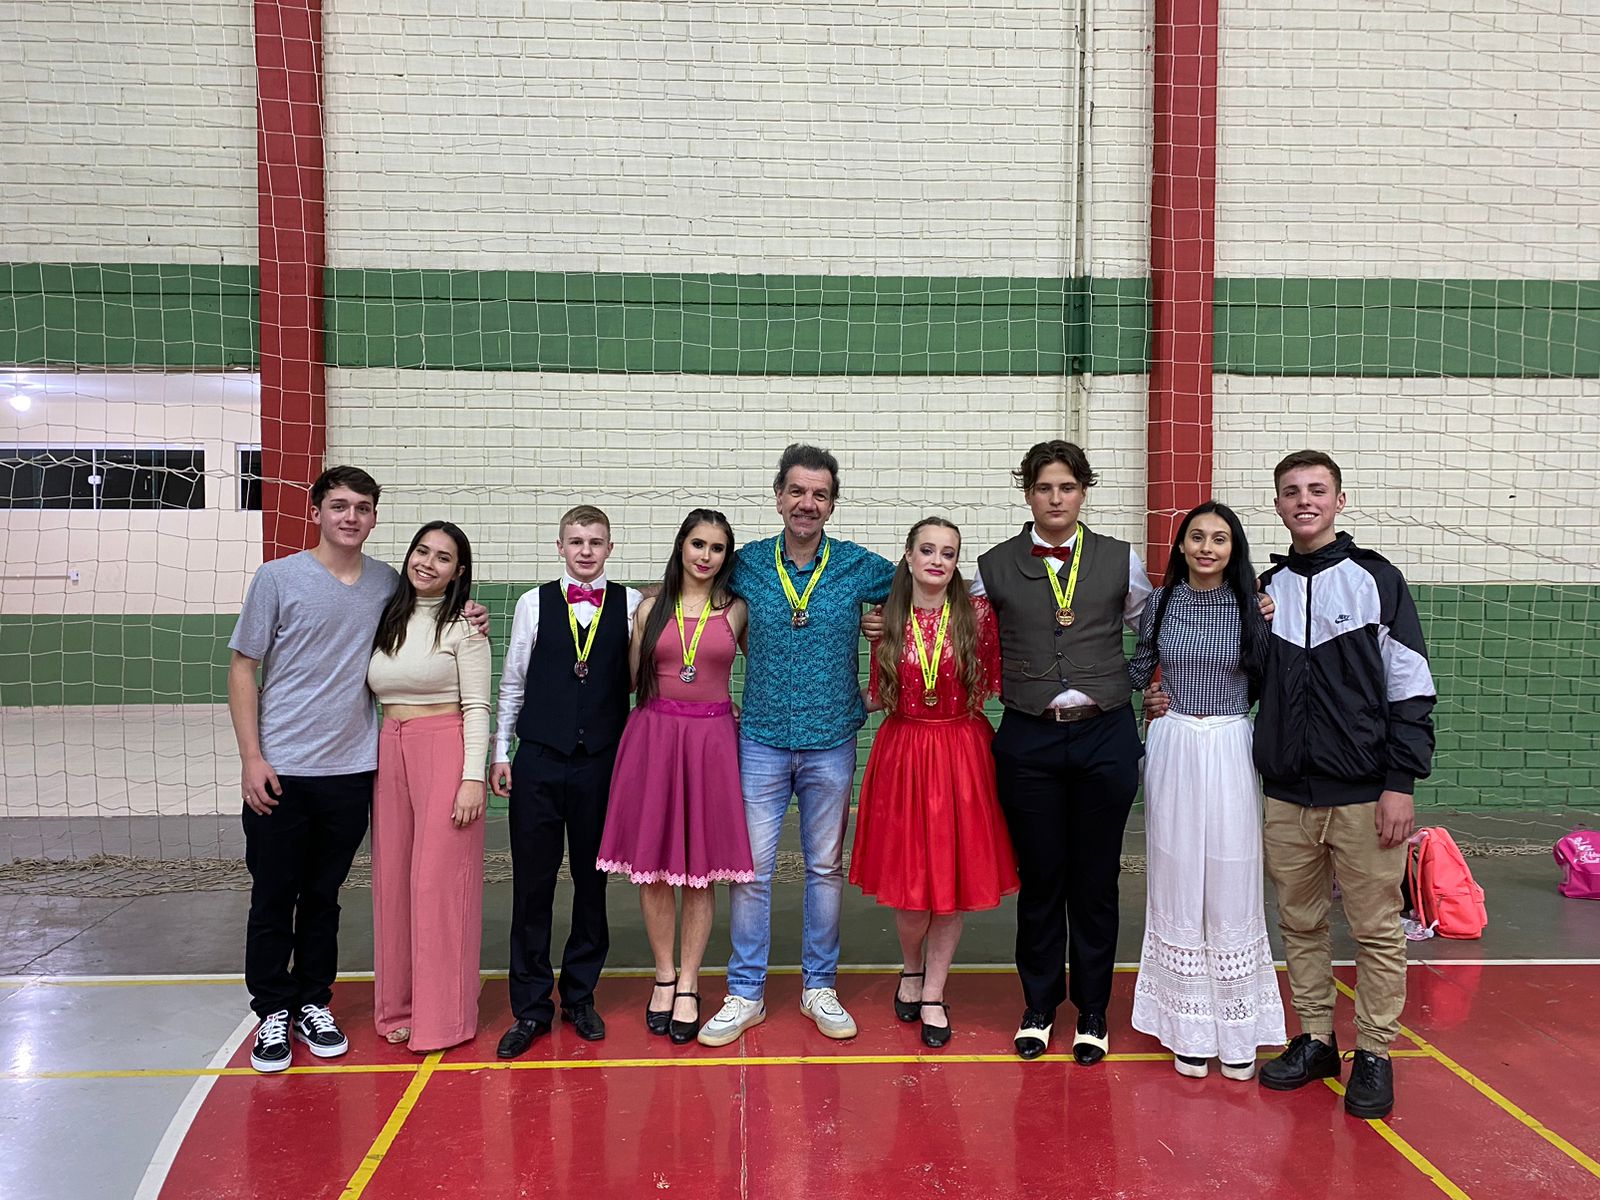 Premiados na dança de salão: Luiz e Letícia (vestido rosa)  conquistaram o 2º lugar e Pedro e Isadora (vestido vermelho) o 1º lugar